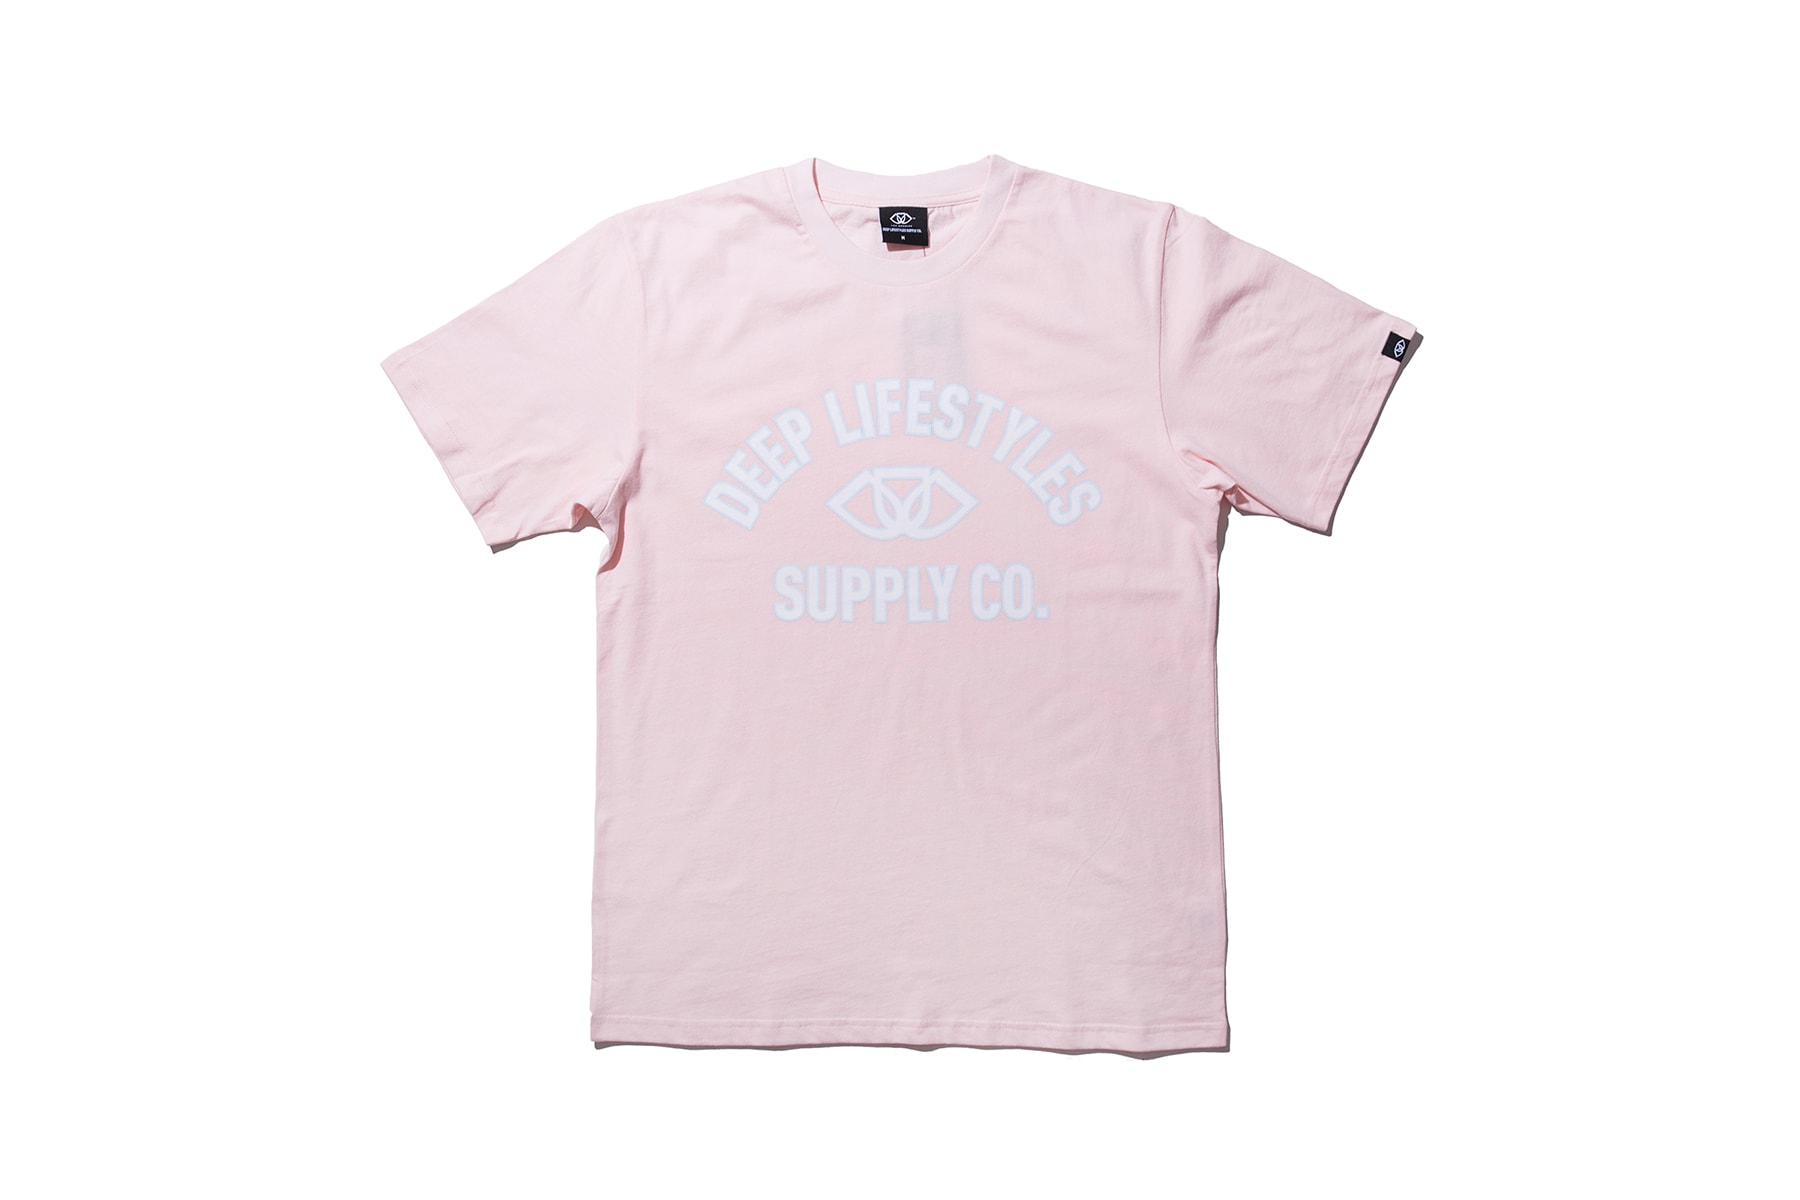 洛杉磯街頭品牌 Deep Lifestyles Supply Co. 春夏新品上架